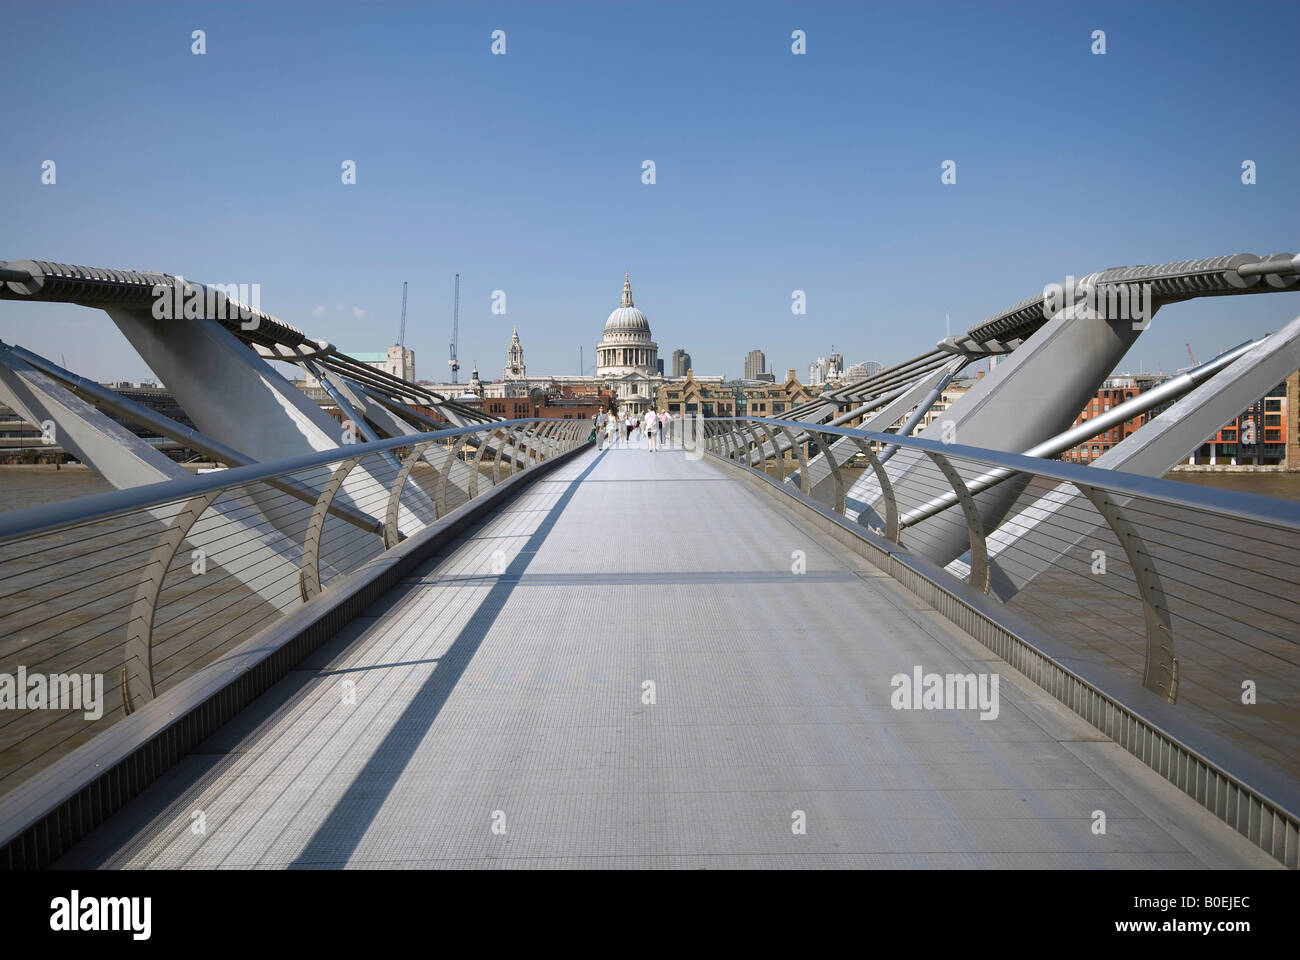 Le Millennium Bridge, tamise, Londres, Angleterre Banque D'Images